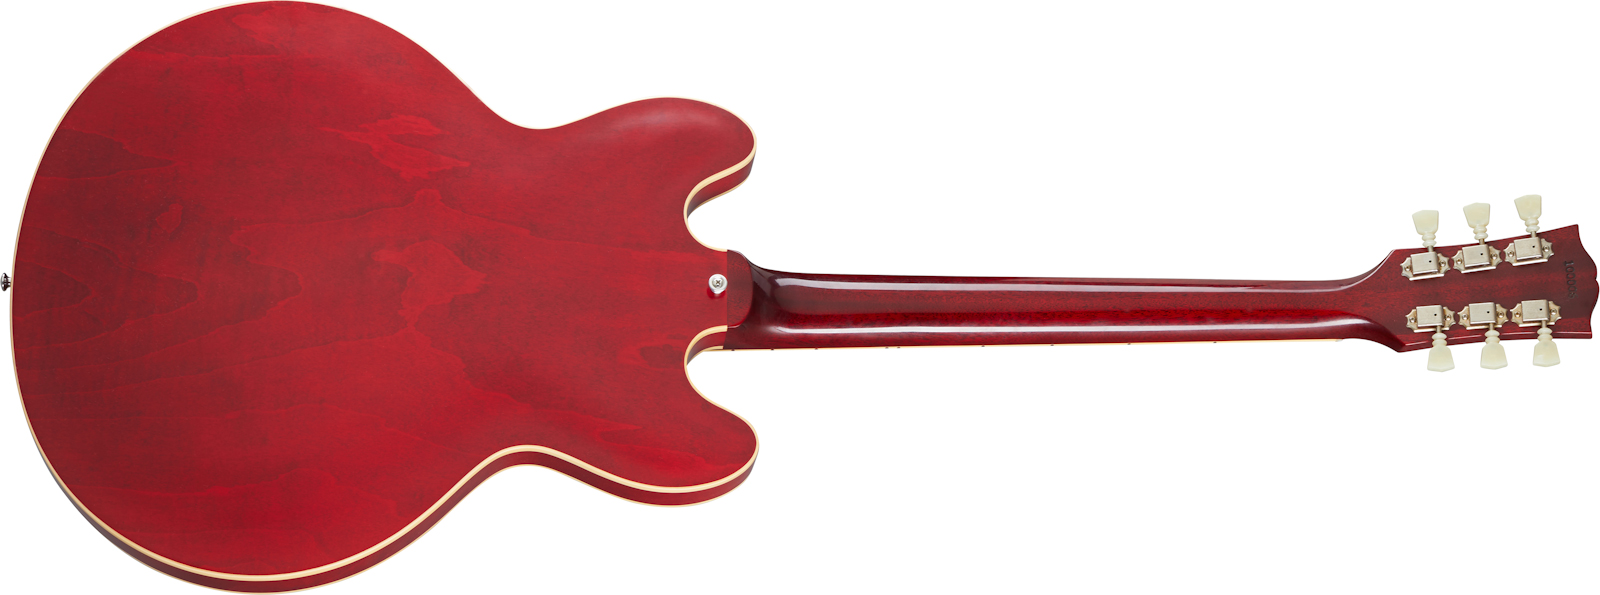 Gibson Custom Shop Historic Es-335 Reissue 1964 Lh Gaucher 2h Ht Rw - Vos Sixties Cherry - Linkshandige elektrische gitaar - Variation 1